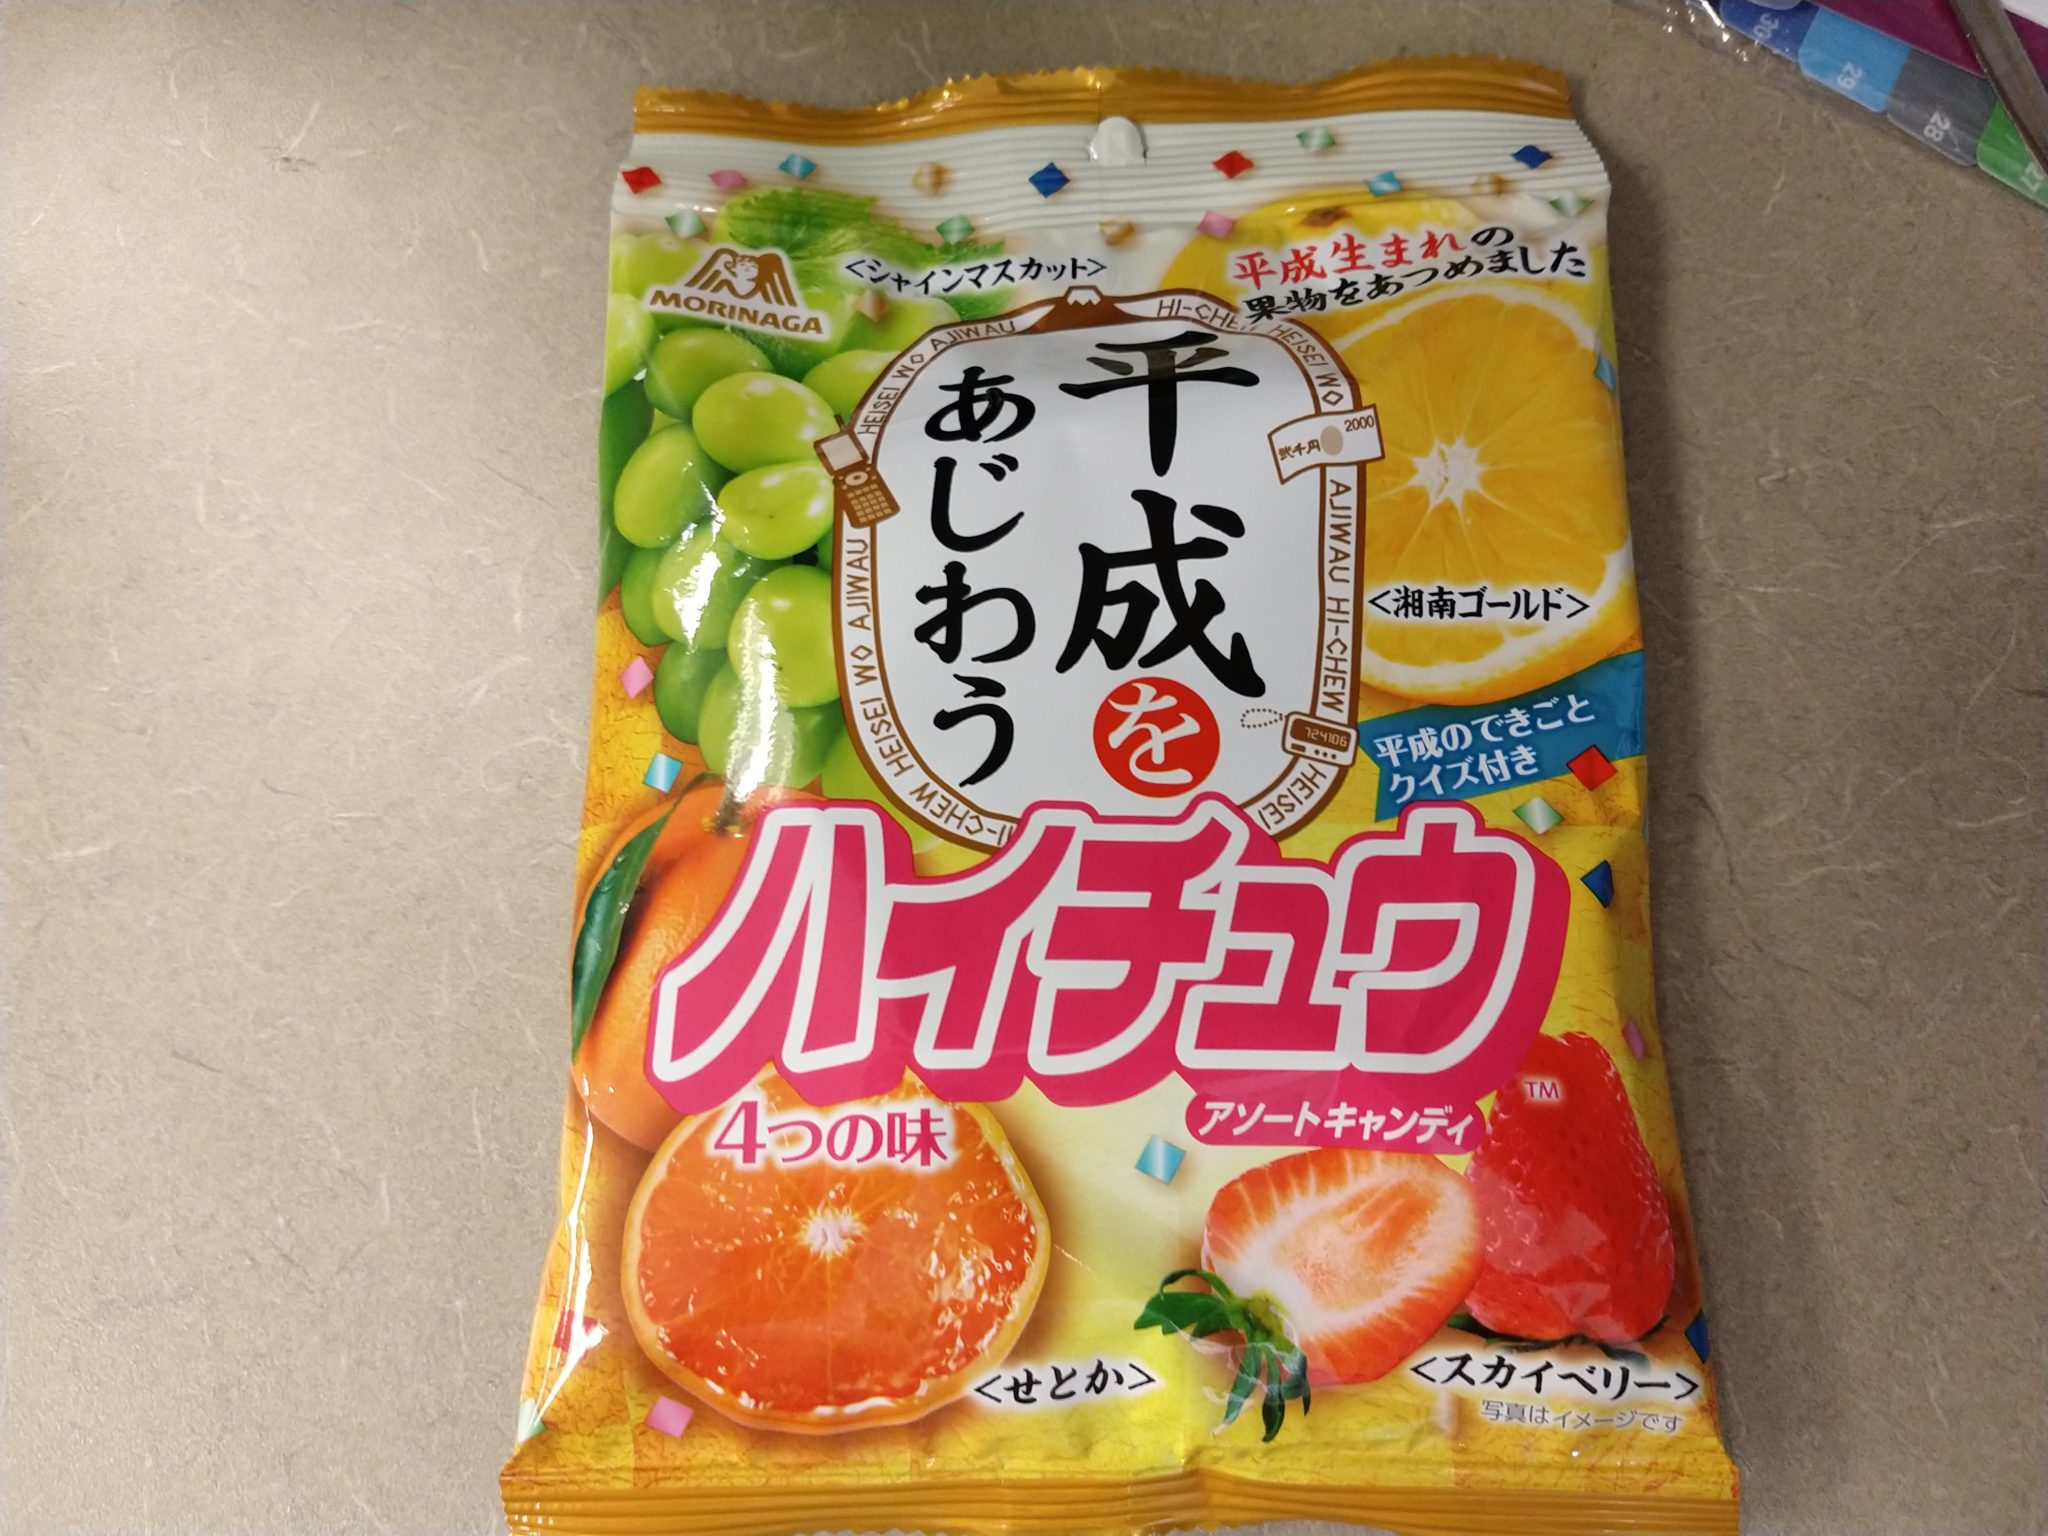 Hi-Chew – Heisei Fruits Mix